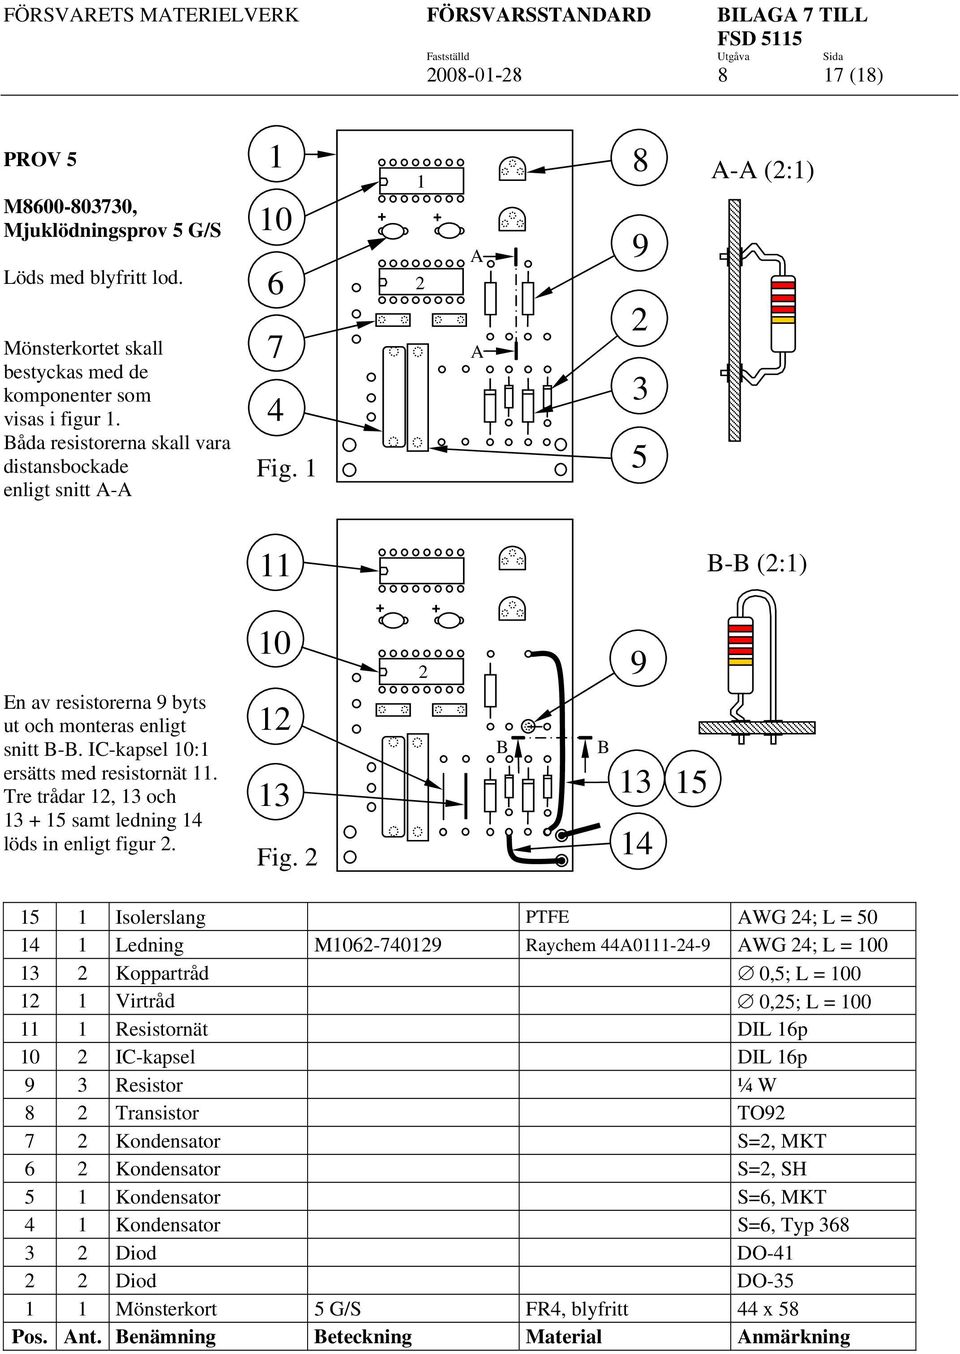 1 1 + + 2 A A 8 9 2 3 5 A-A (2:1) 11 B-B (2:1) En av resistorerna 9 byts ut och monteras enligt snitt B-B. IC-kapsel 10:1 ersätts med resistornät 11.